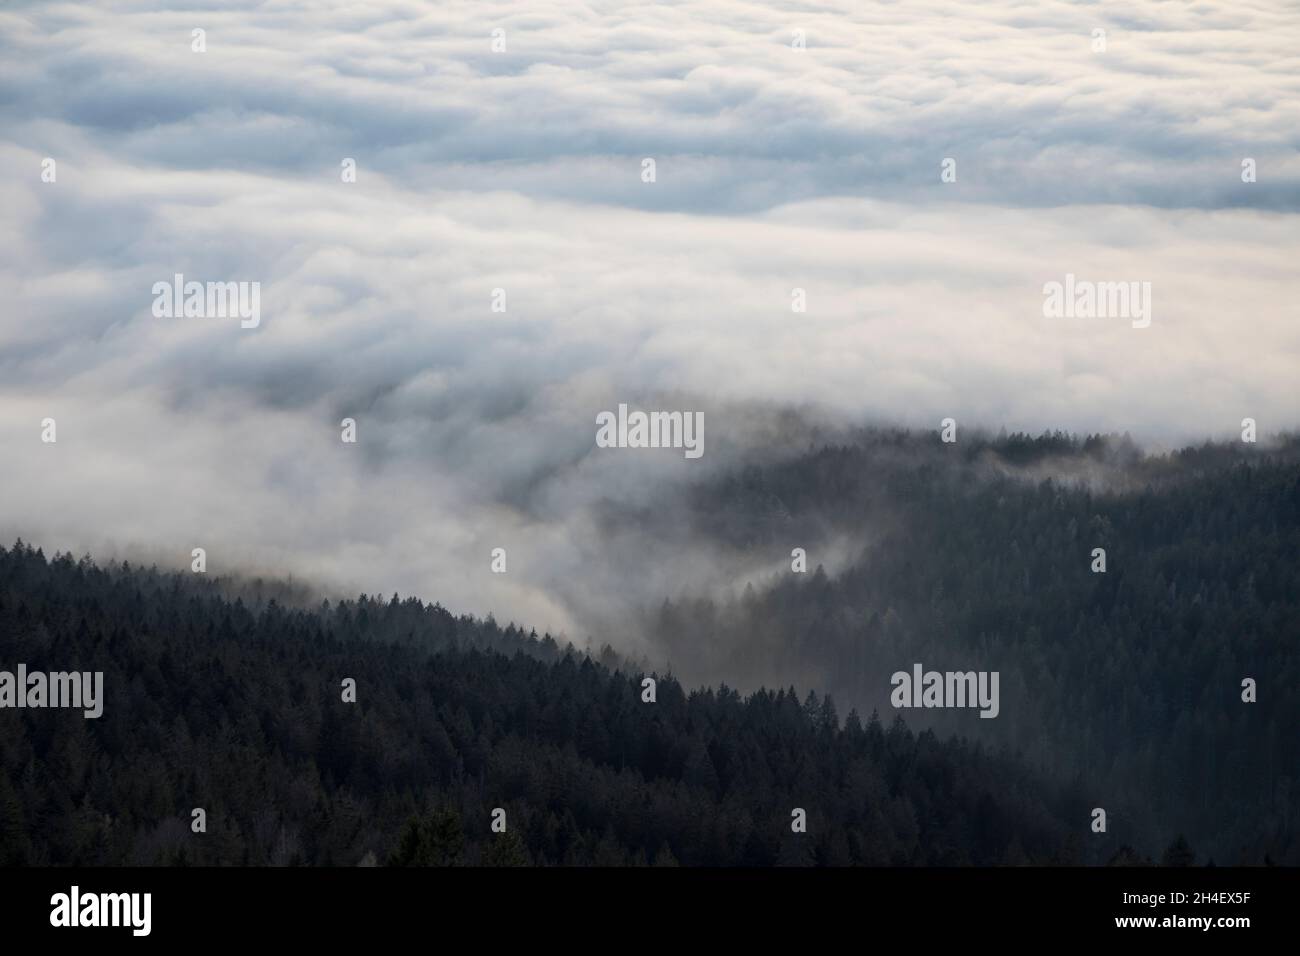 Nebel ueber Baeumen, Fog over trees Stock Photo